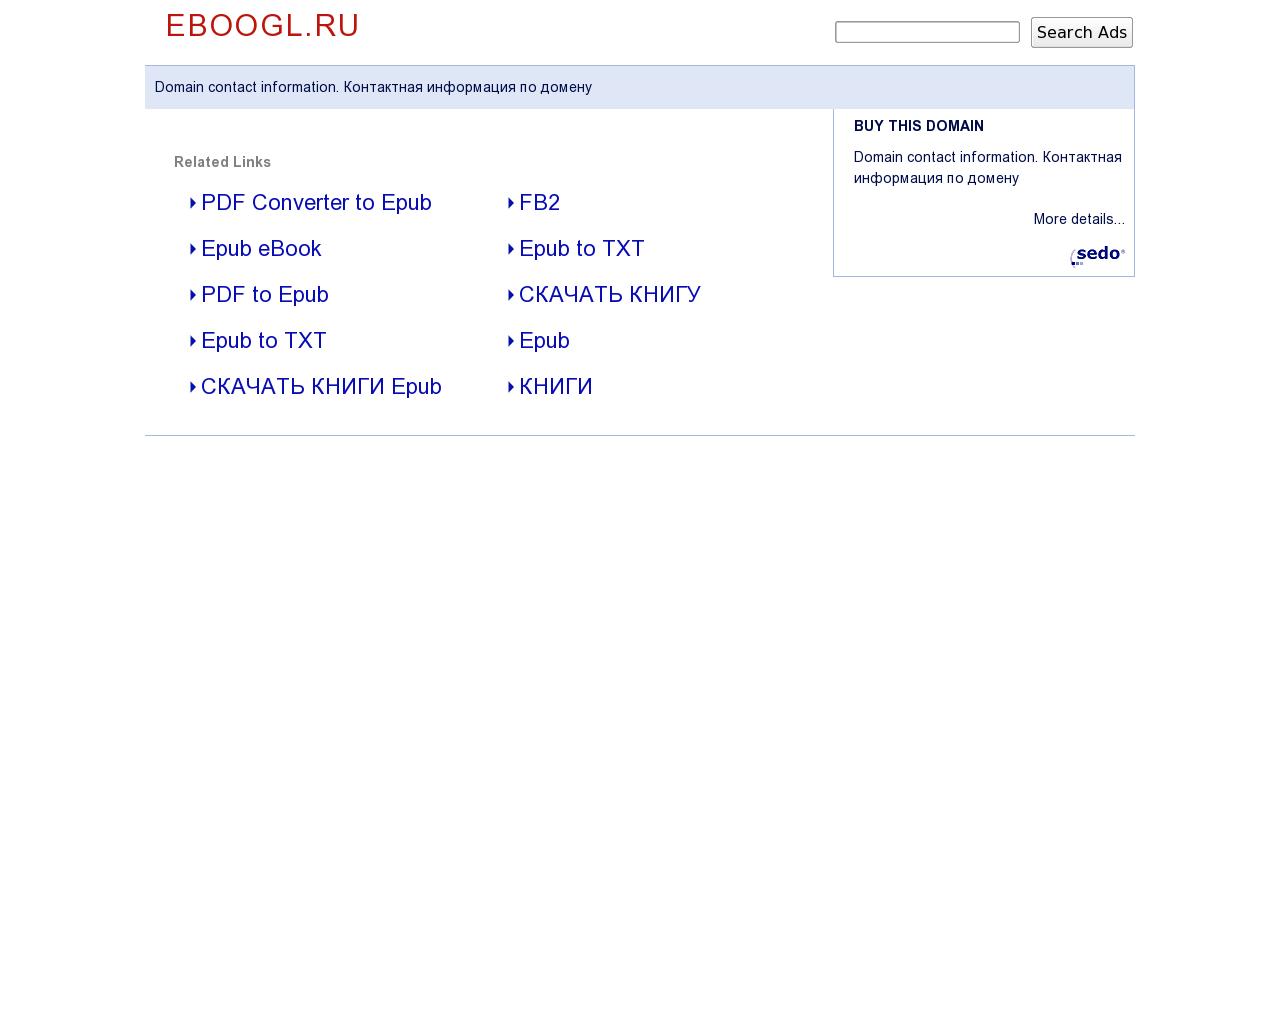 Изображение сайта eboogl.ru в разрешении 1280x1024